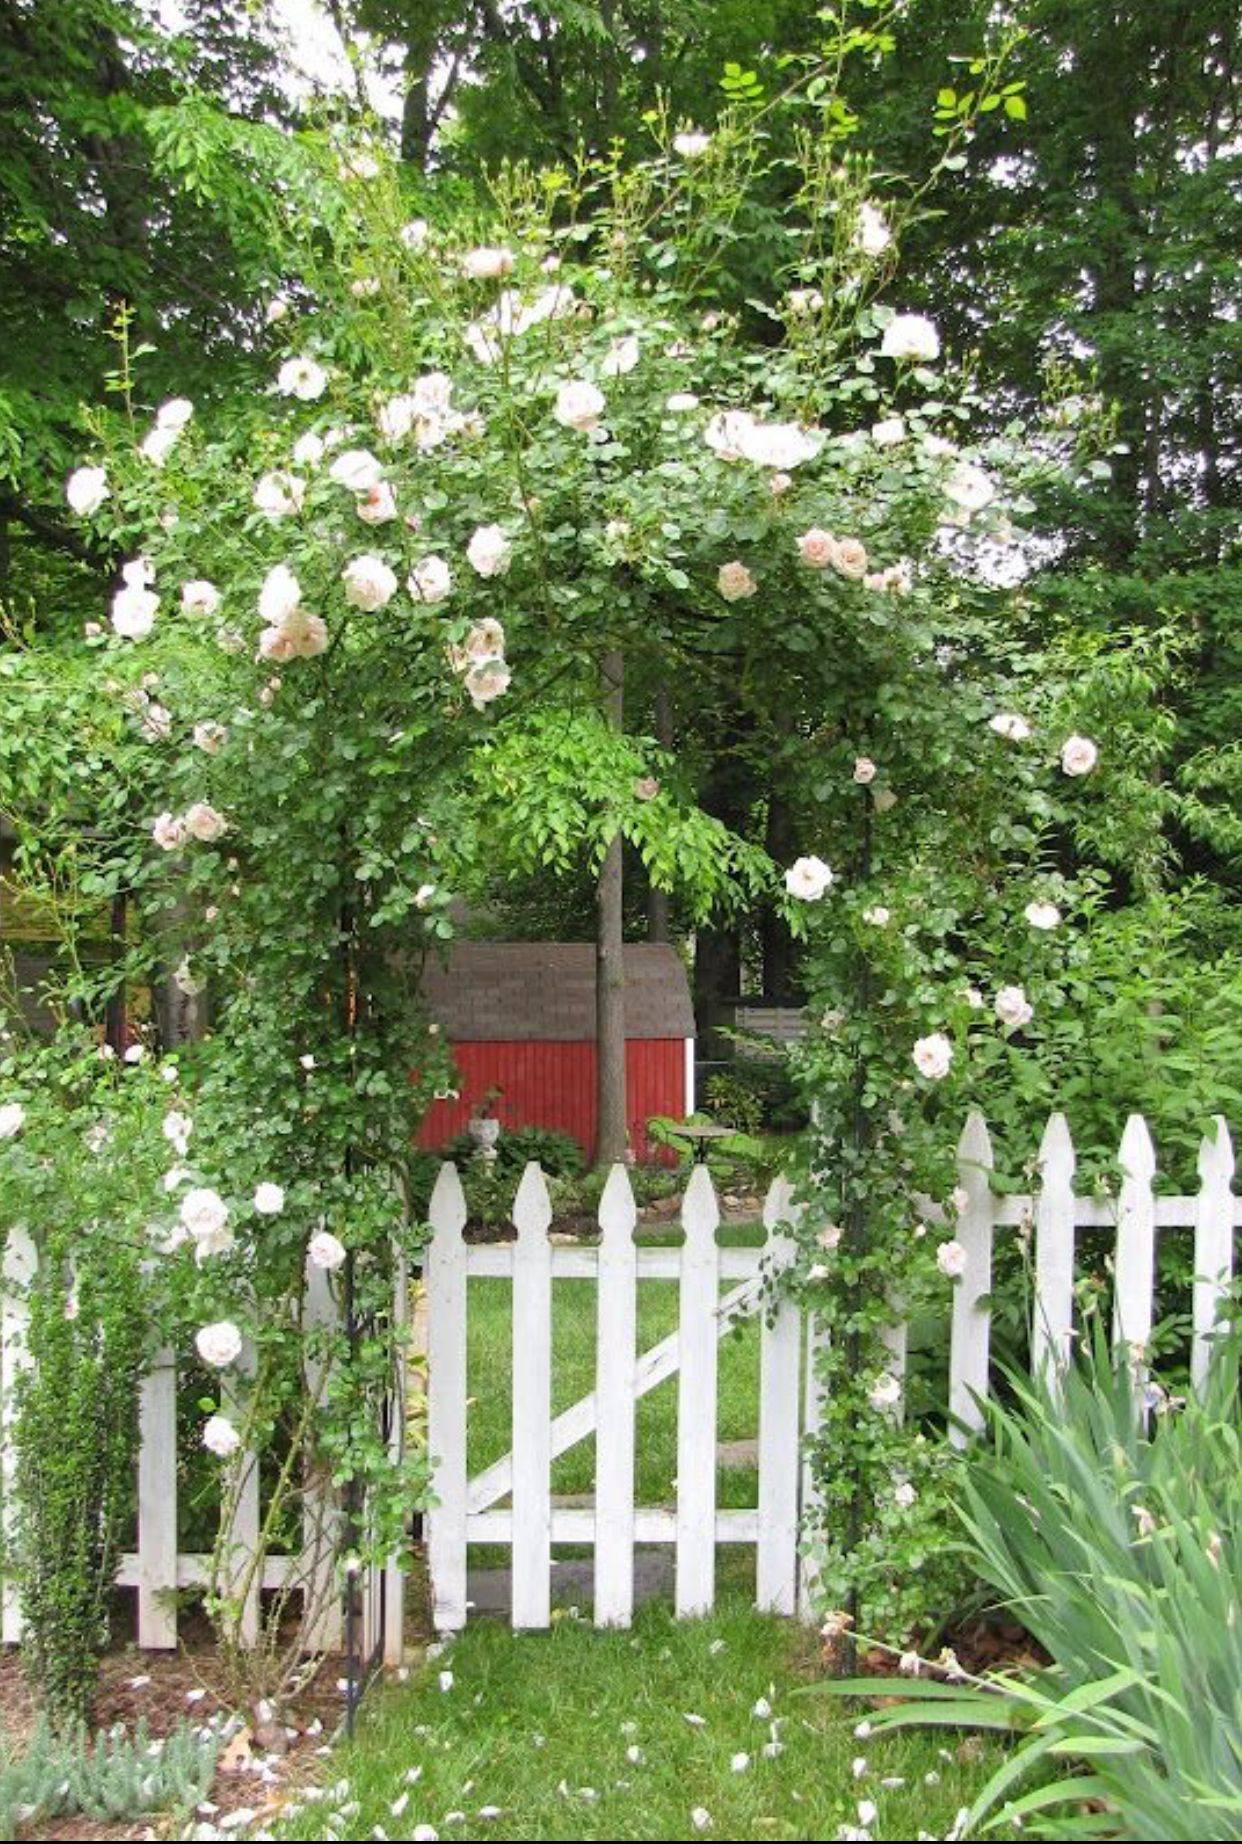 Tudor Rose Cottage Cottage Garden